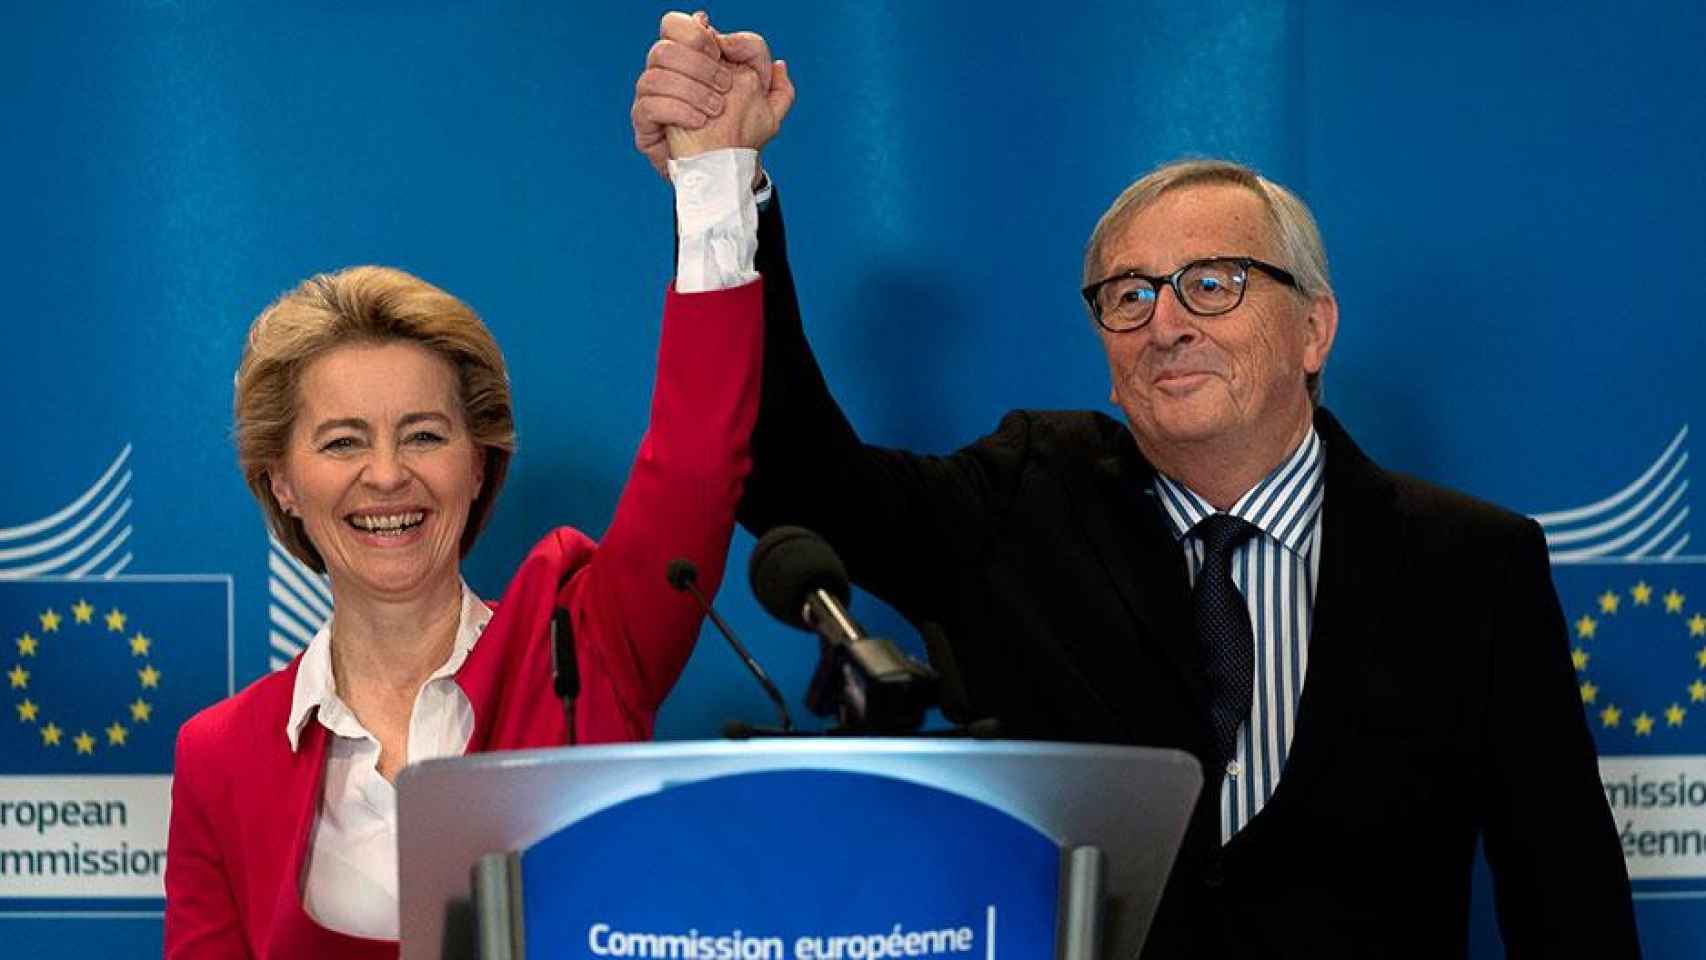 Ursula von der Leyen recoge el testigo de Jean-Claude Juncker como presidenta de la Comisión Europea / EFE